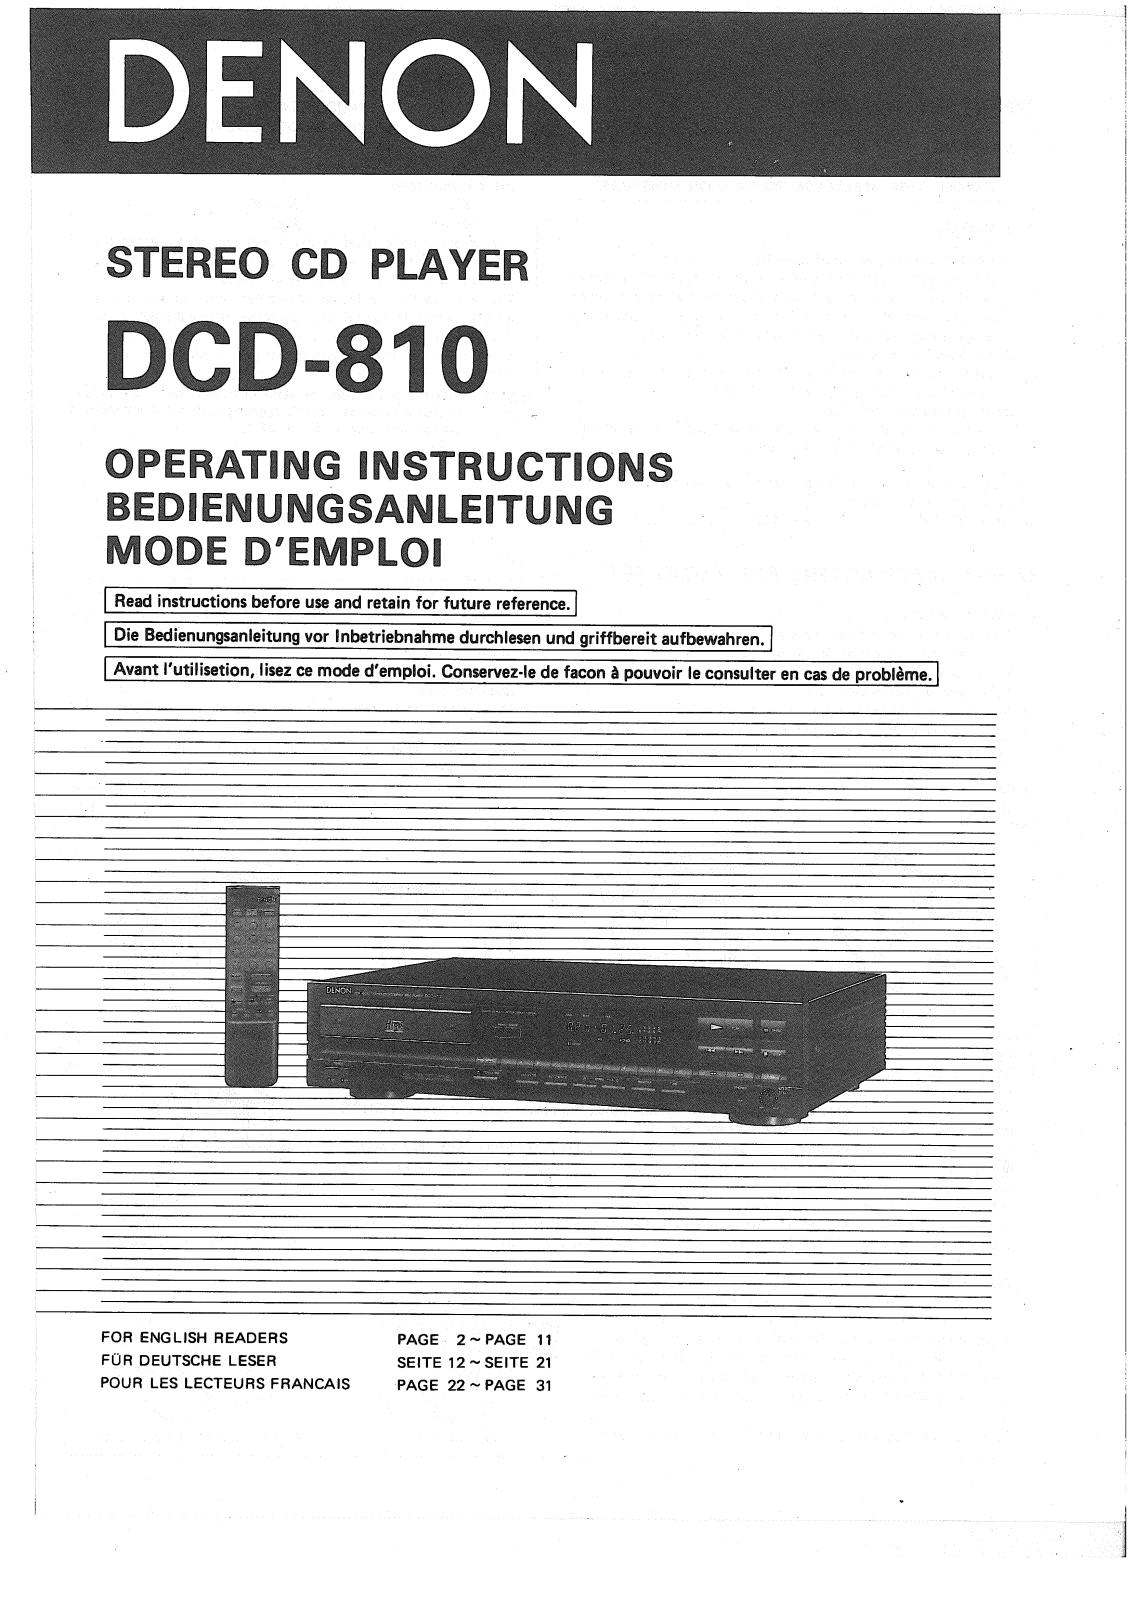 Denon DCD-810 Owner's Manual